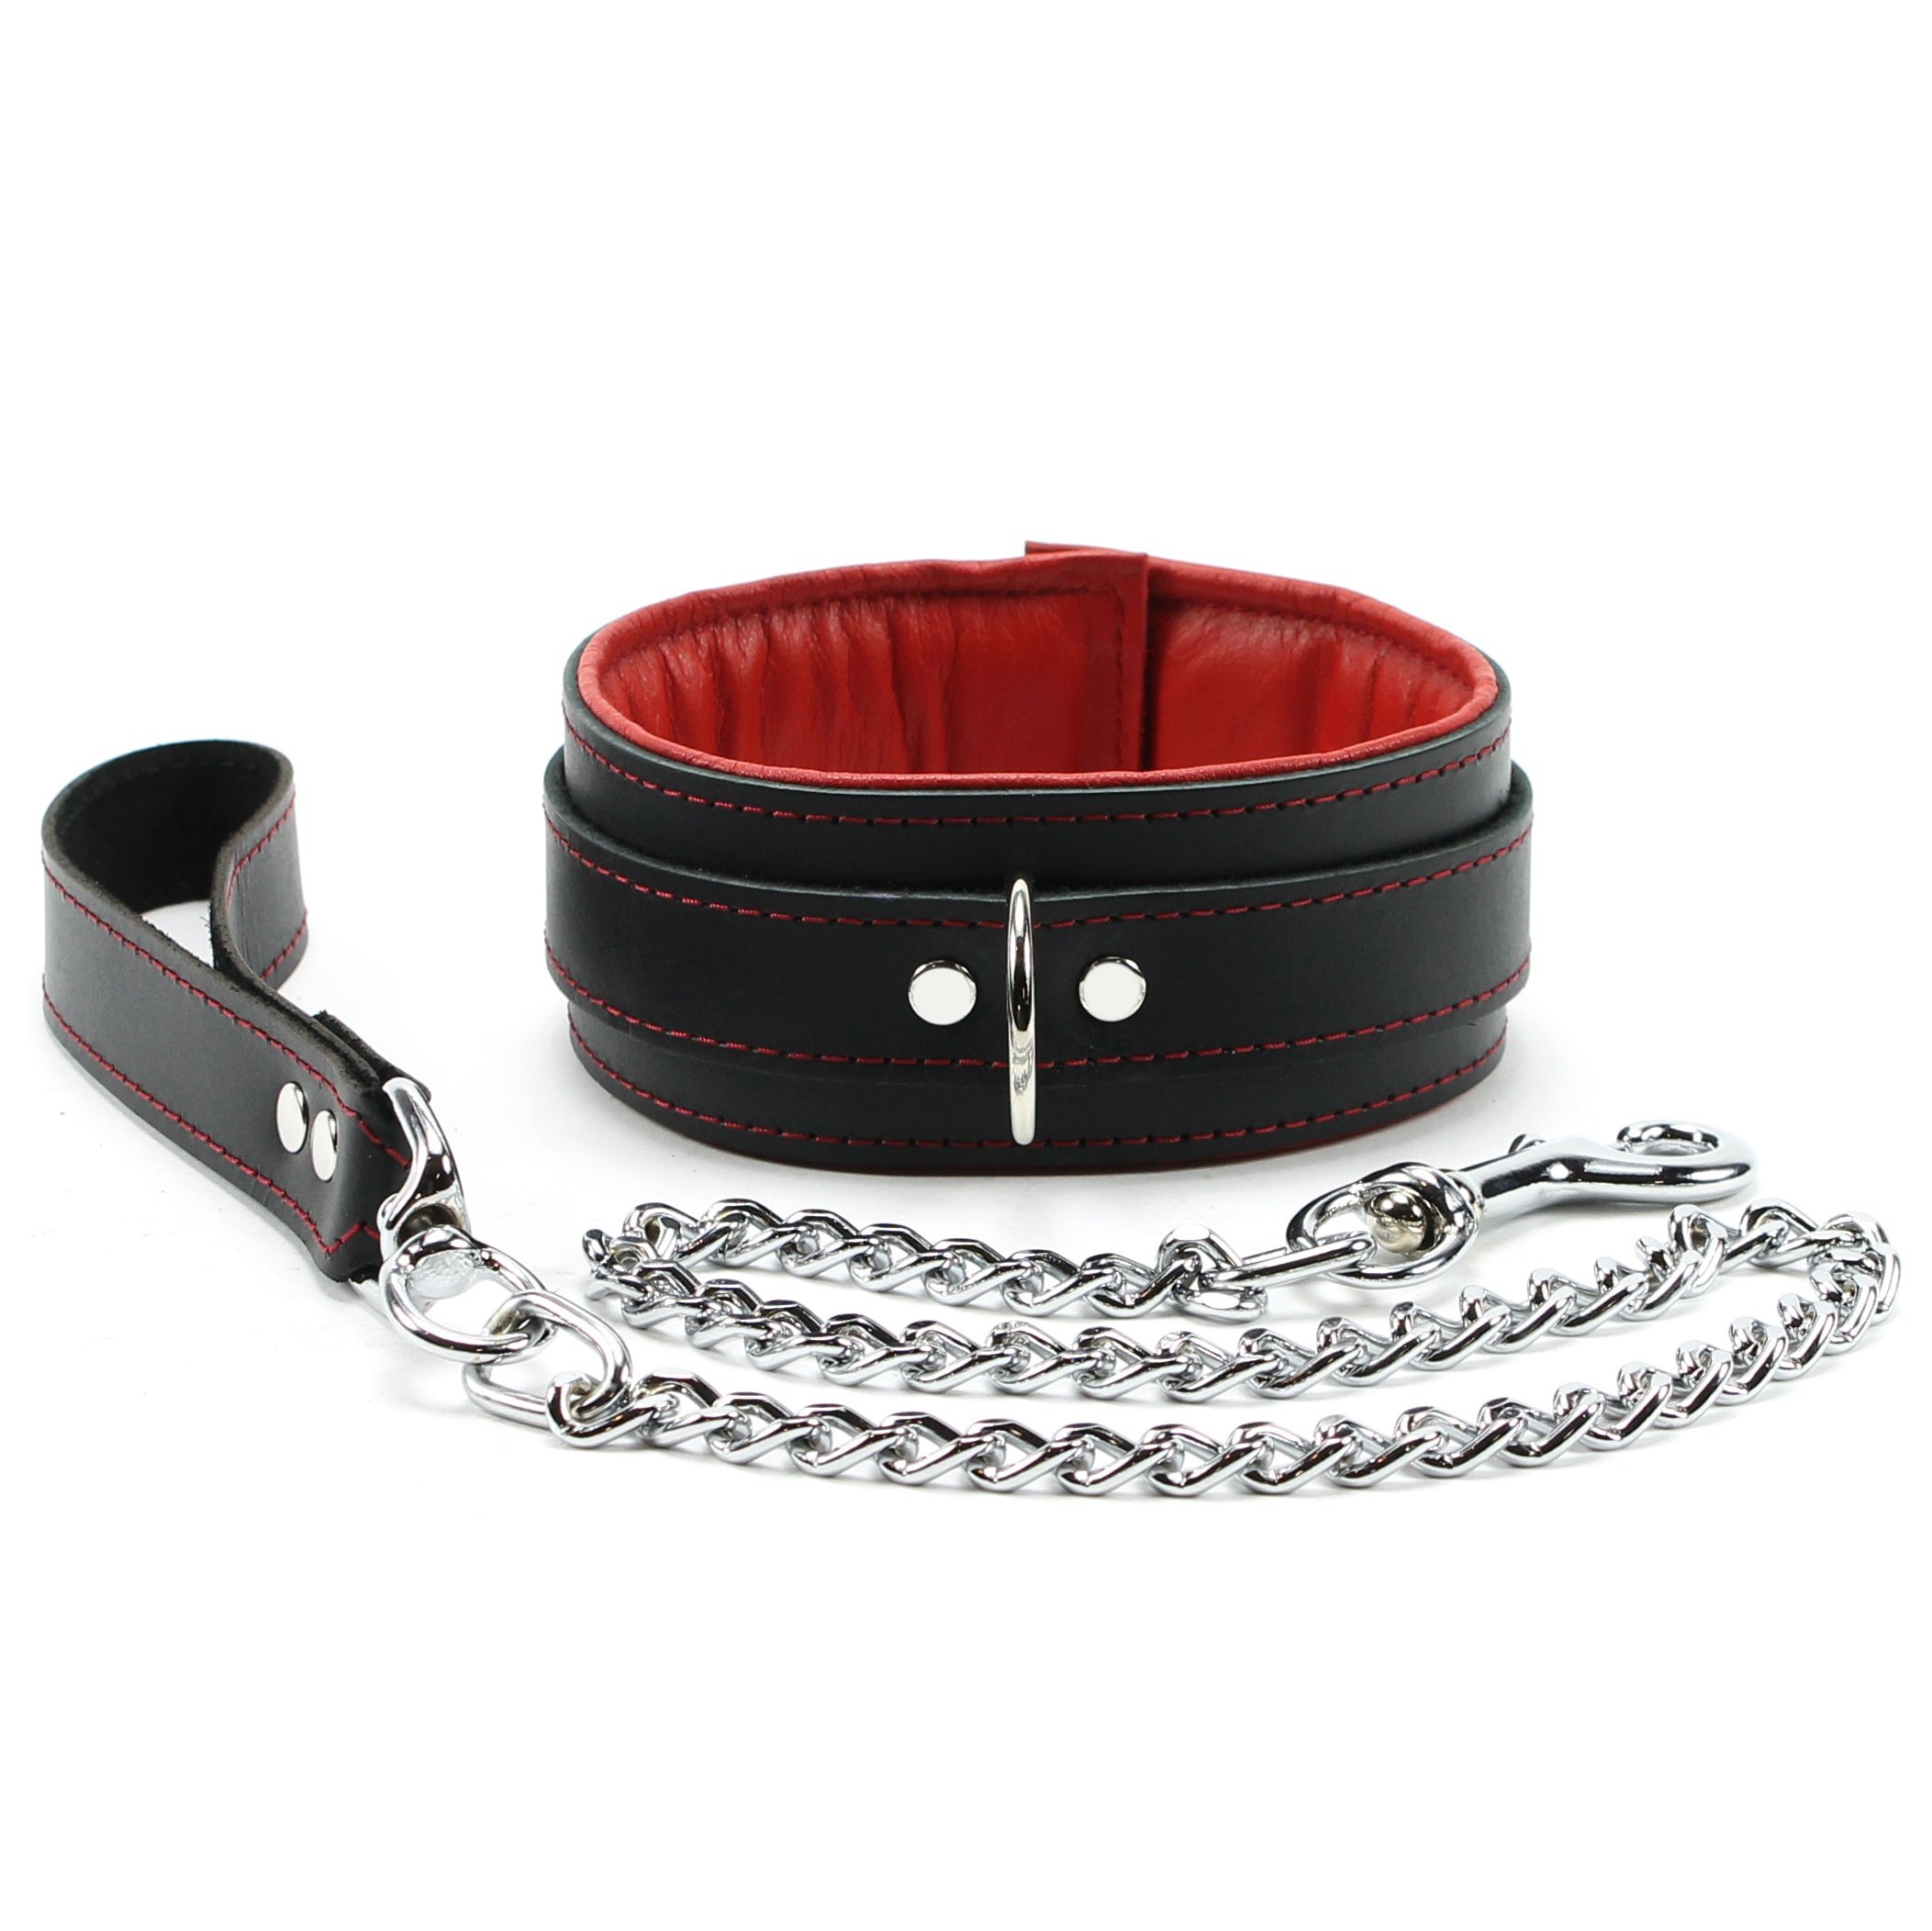 Mandrake Luxury Leather BDSM Blindfold